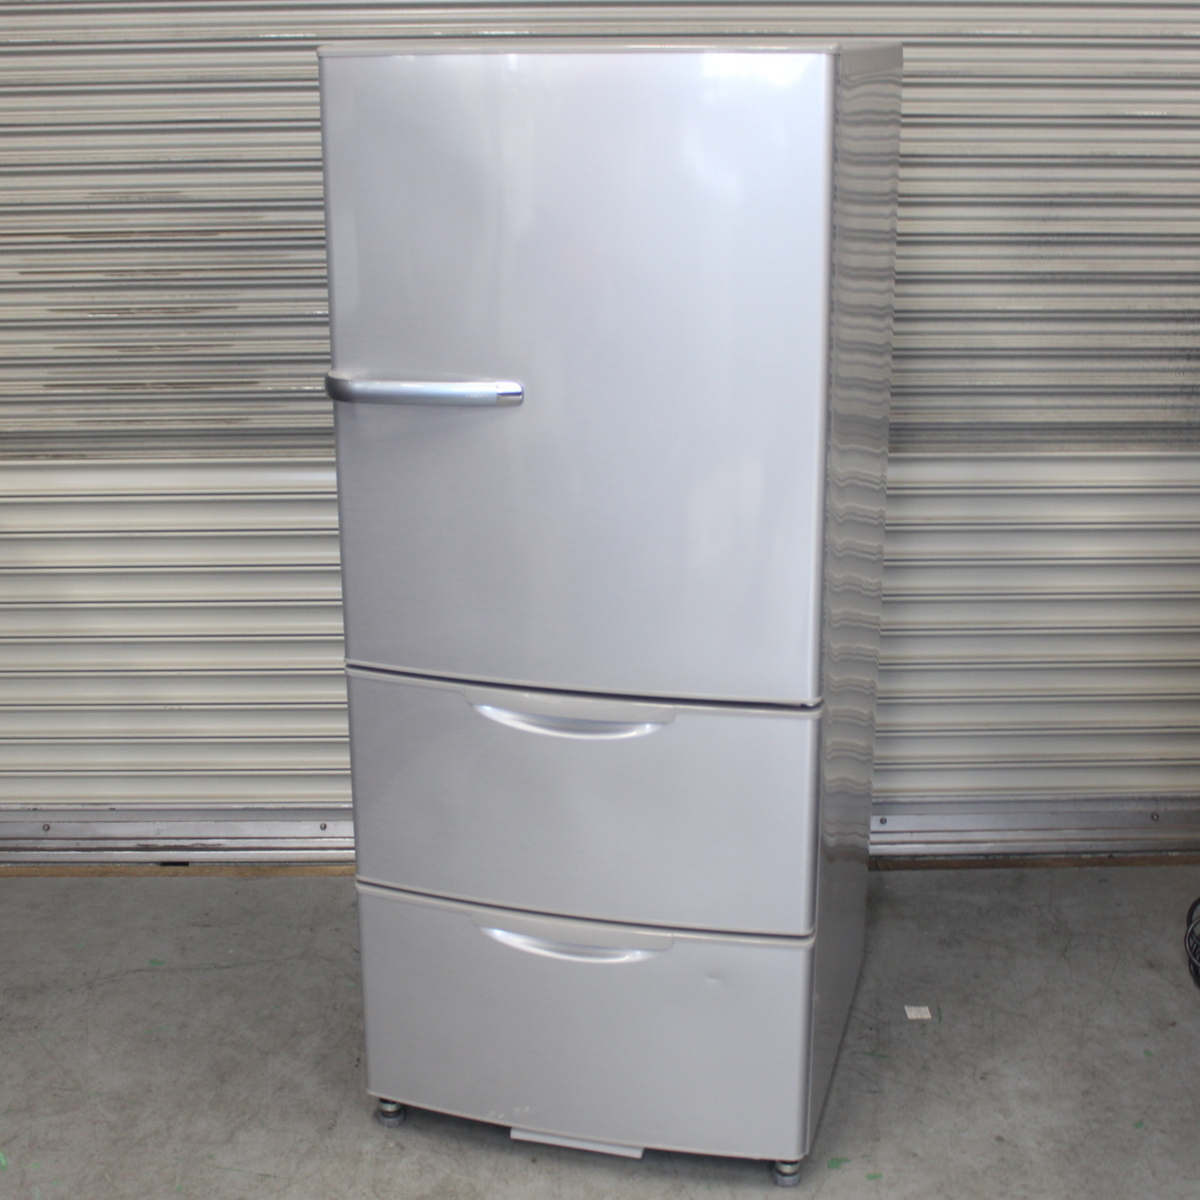 川崎市高津区にて アクア 冷蔵庫 AQR-271D 2016年製 を出張買取させて頂きました。